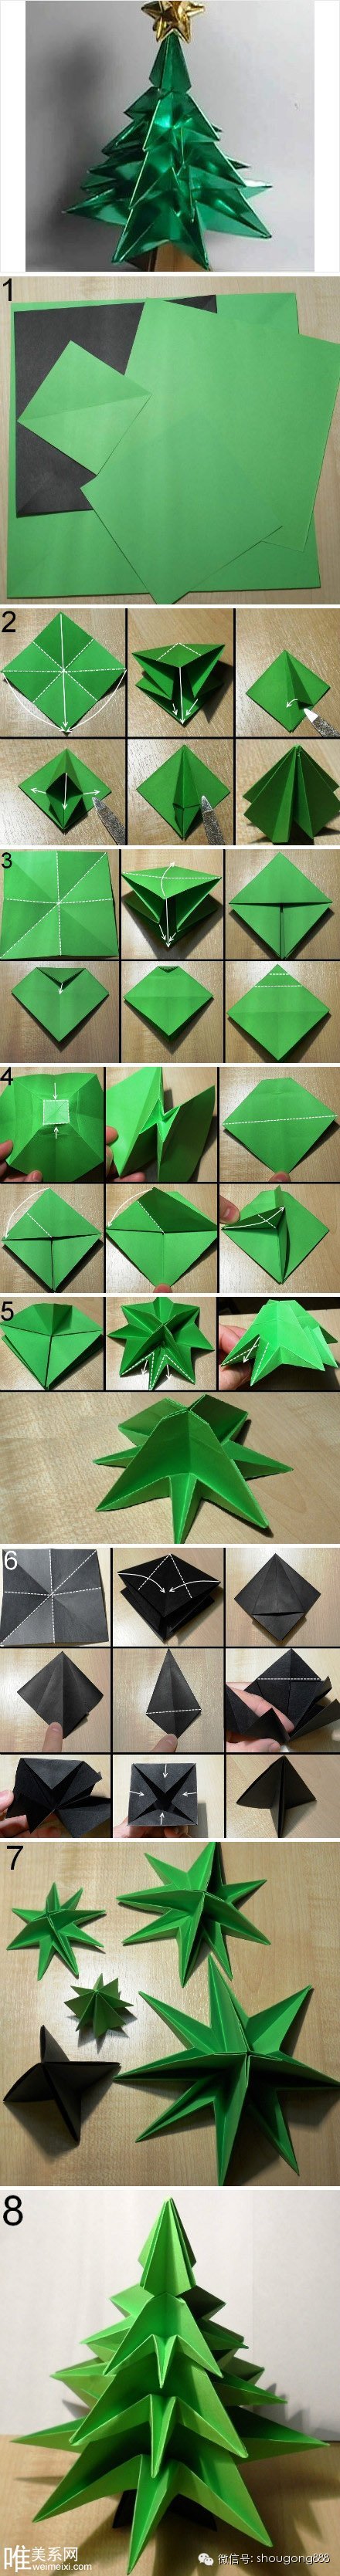 【手工折纸】立体圣诞树折纸教程